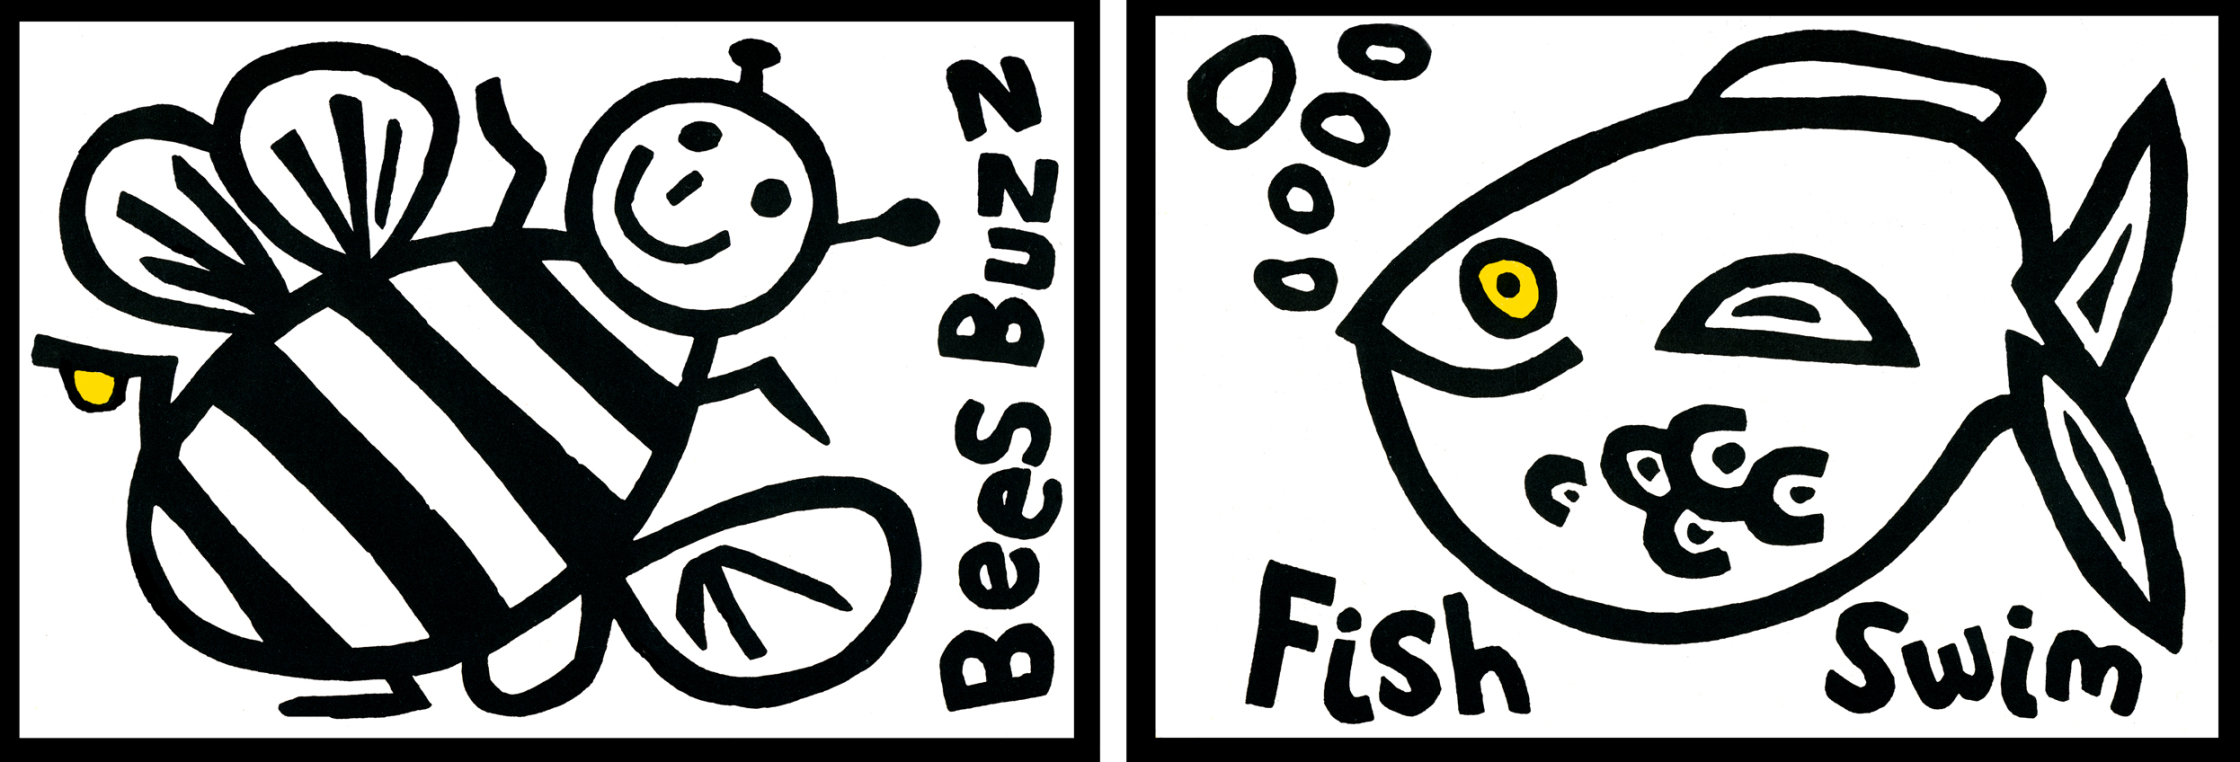 fish_buzz.jpg